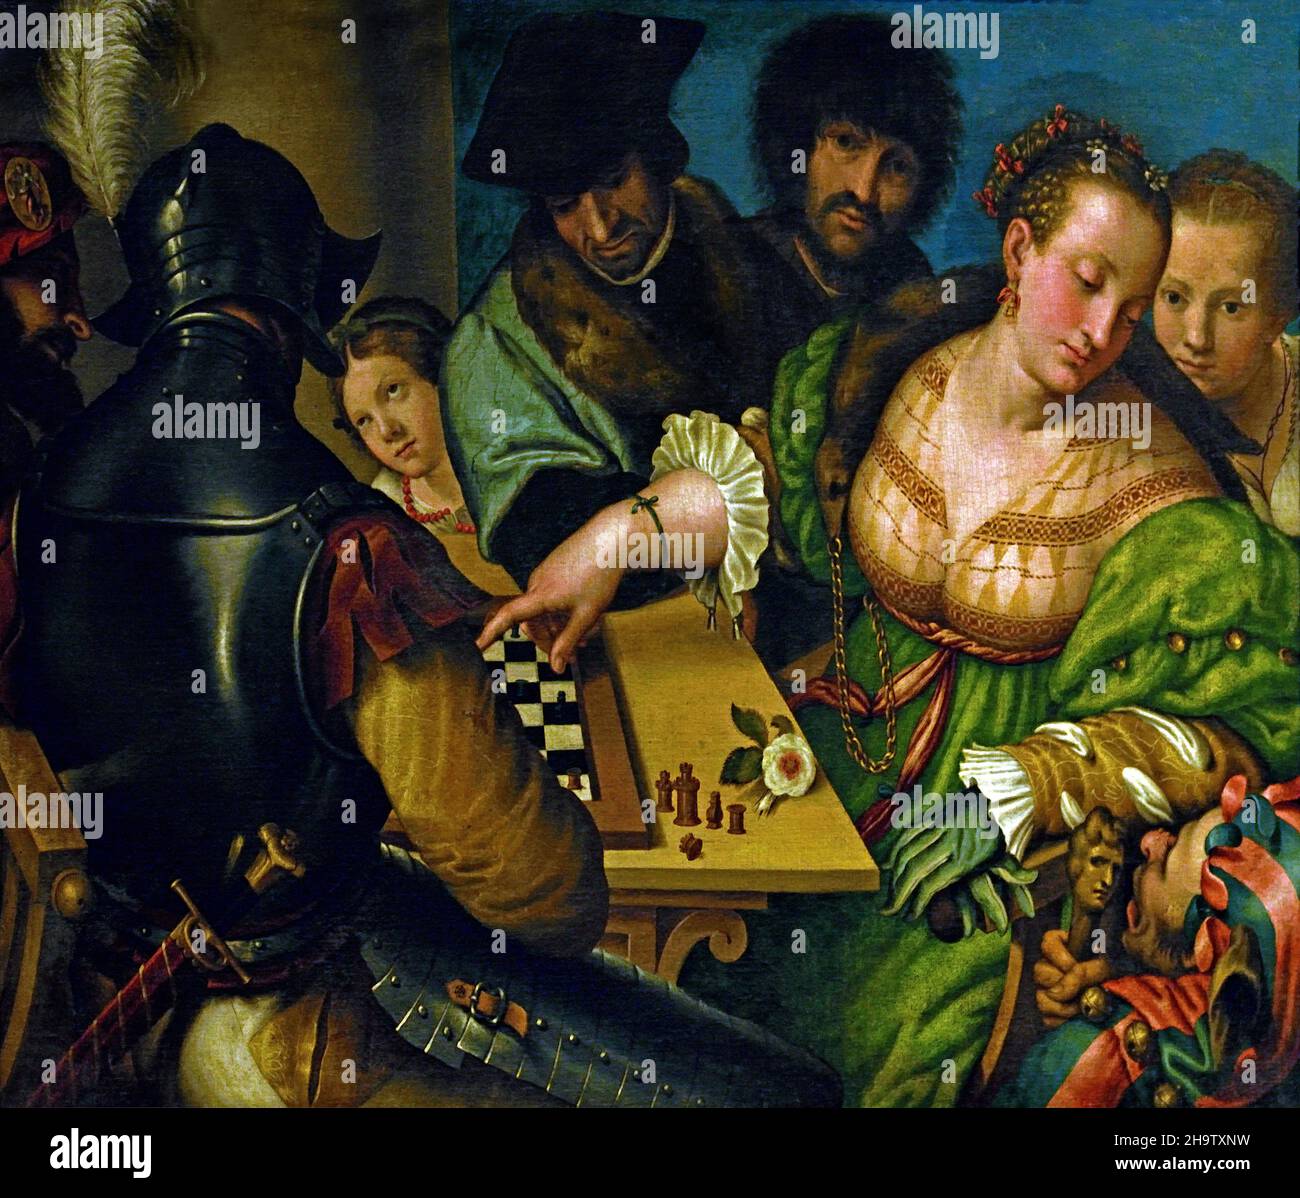 Le jeu des échecs par Giulio Campic.1530 - 1532 Italie, italienne ( la femme du buxom pourrait faire allusion à Vénus, et celle de l'homme à armes à Mars) Banque D'Images